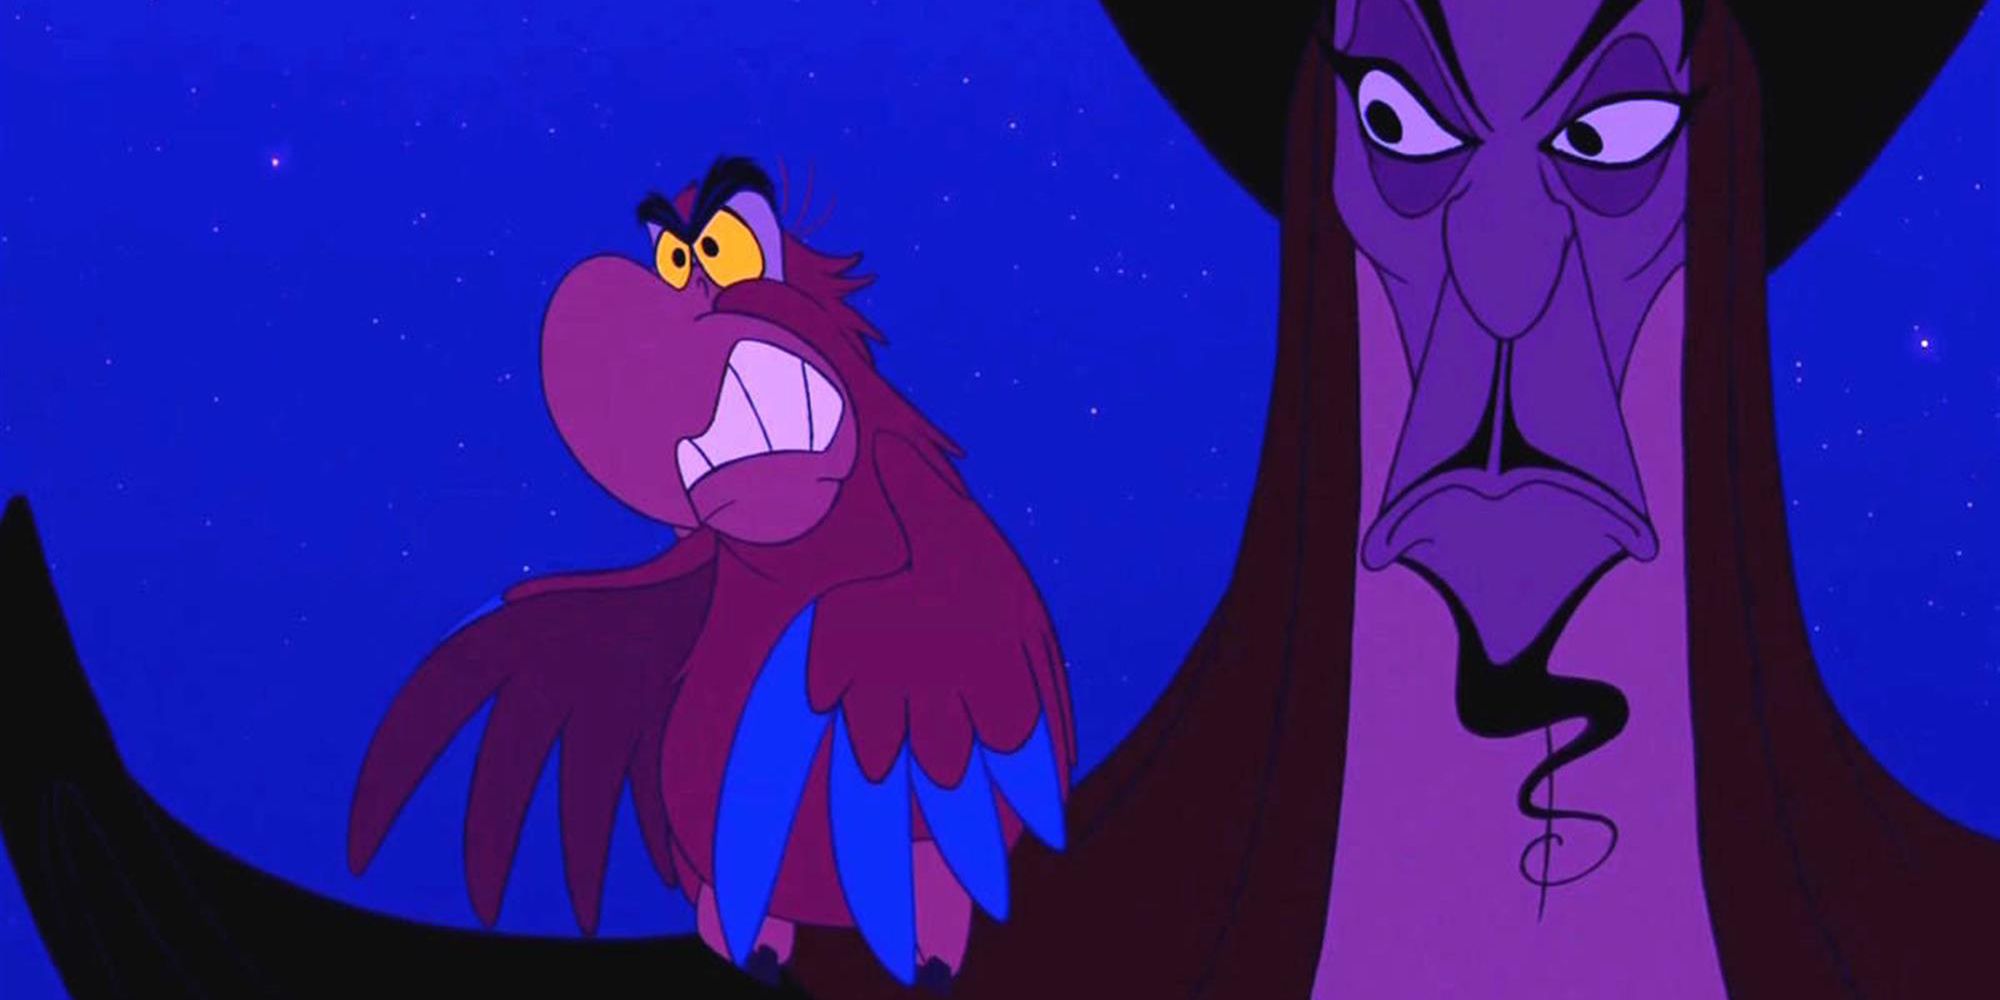 Iago and Jafar in Aladdin